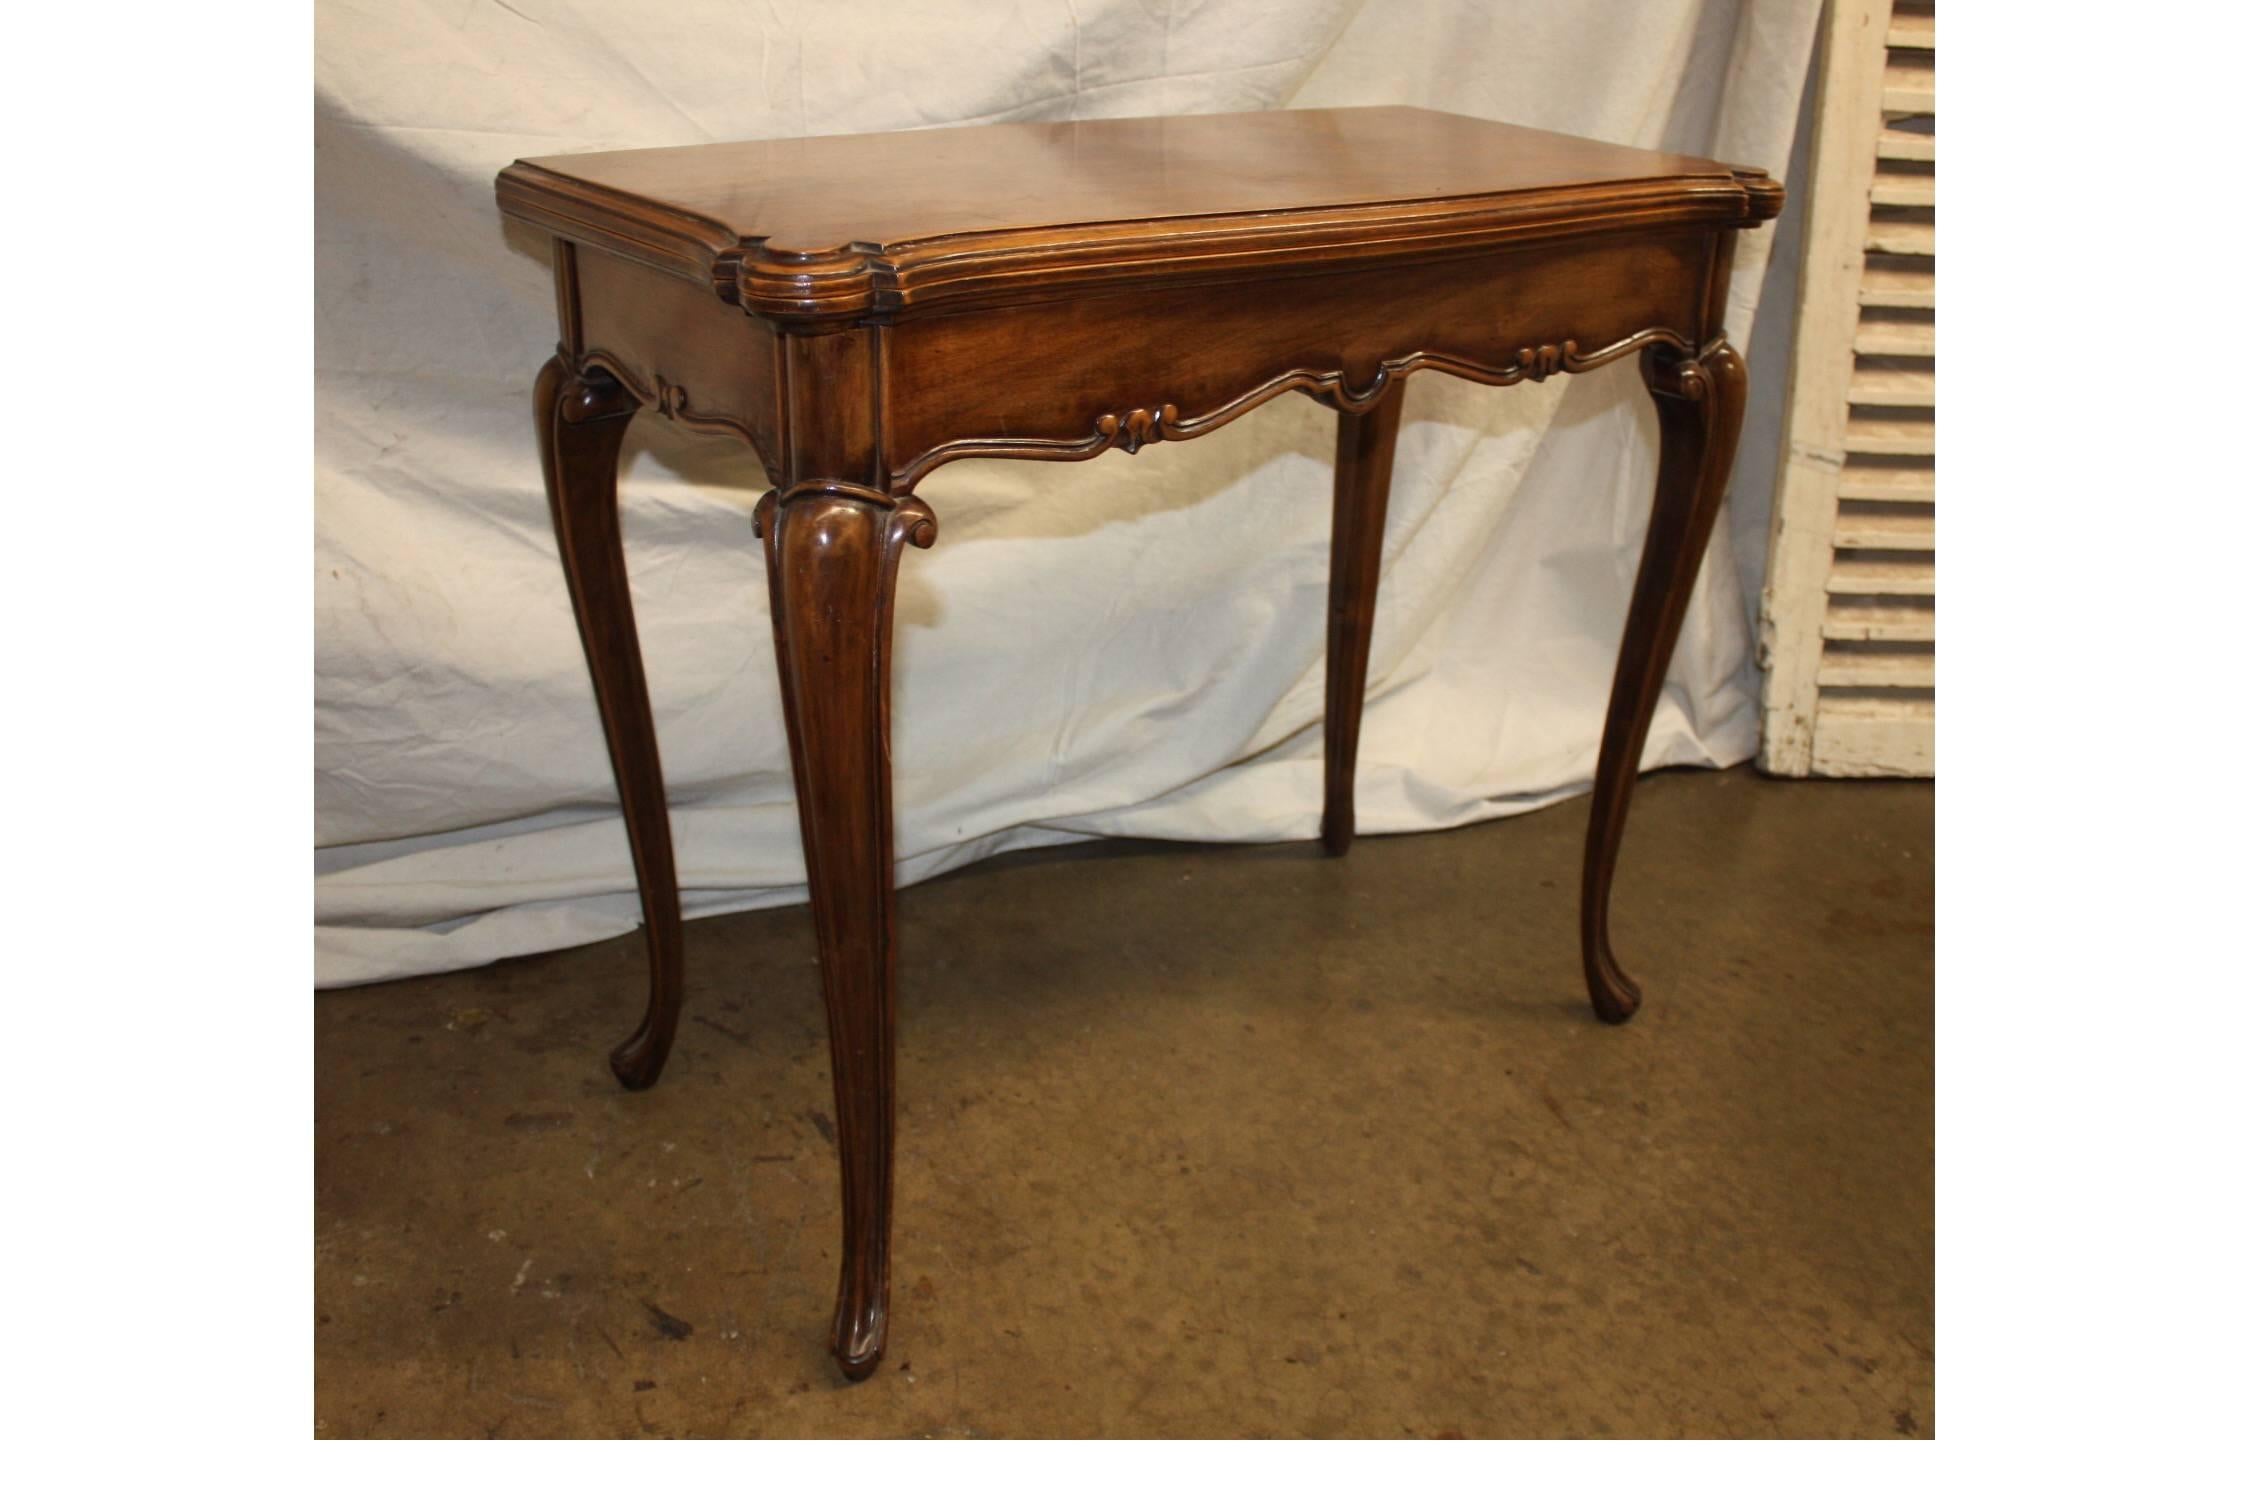 Schöner französischer Spieltisch aus dem 19. Jahrhundert im Stil Louis XV.